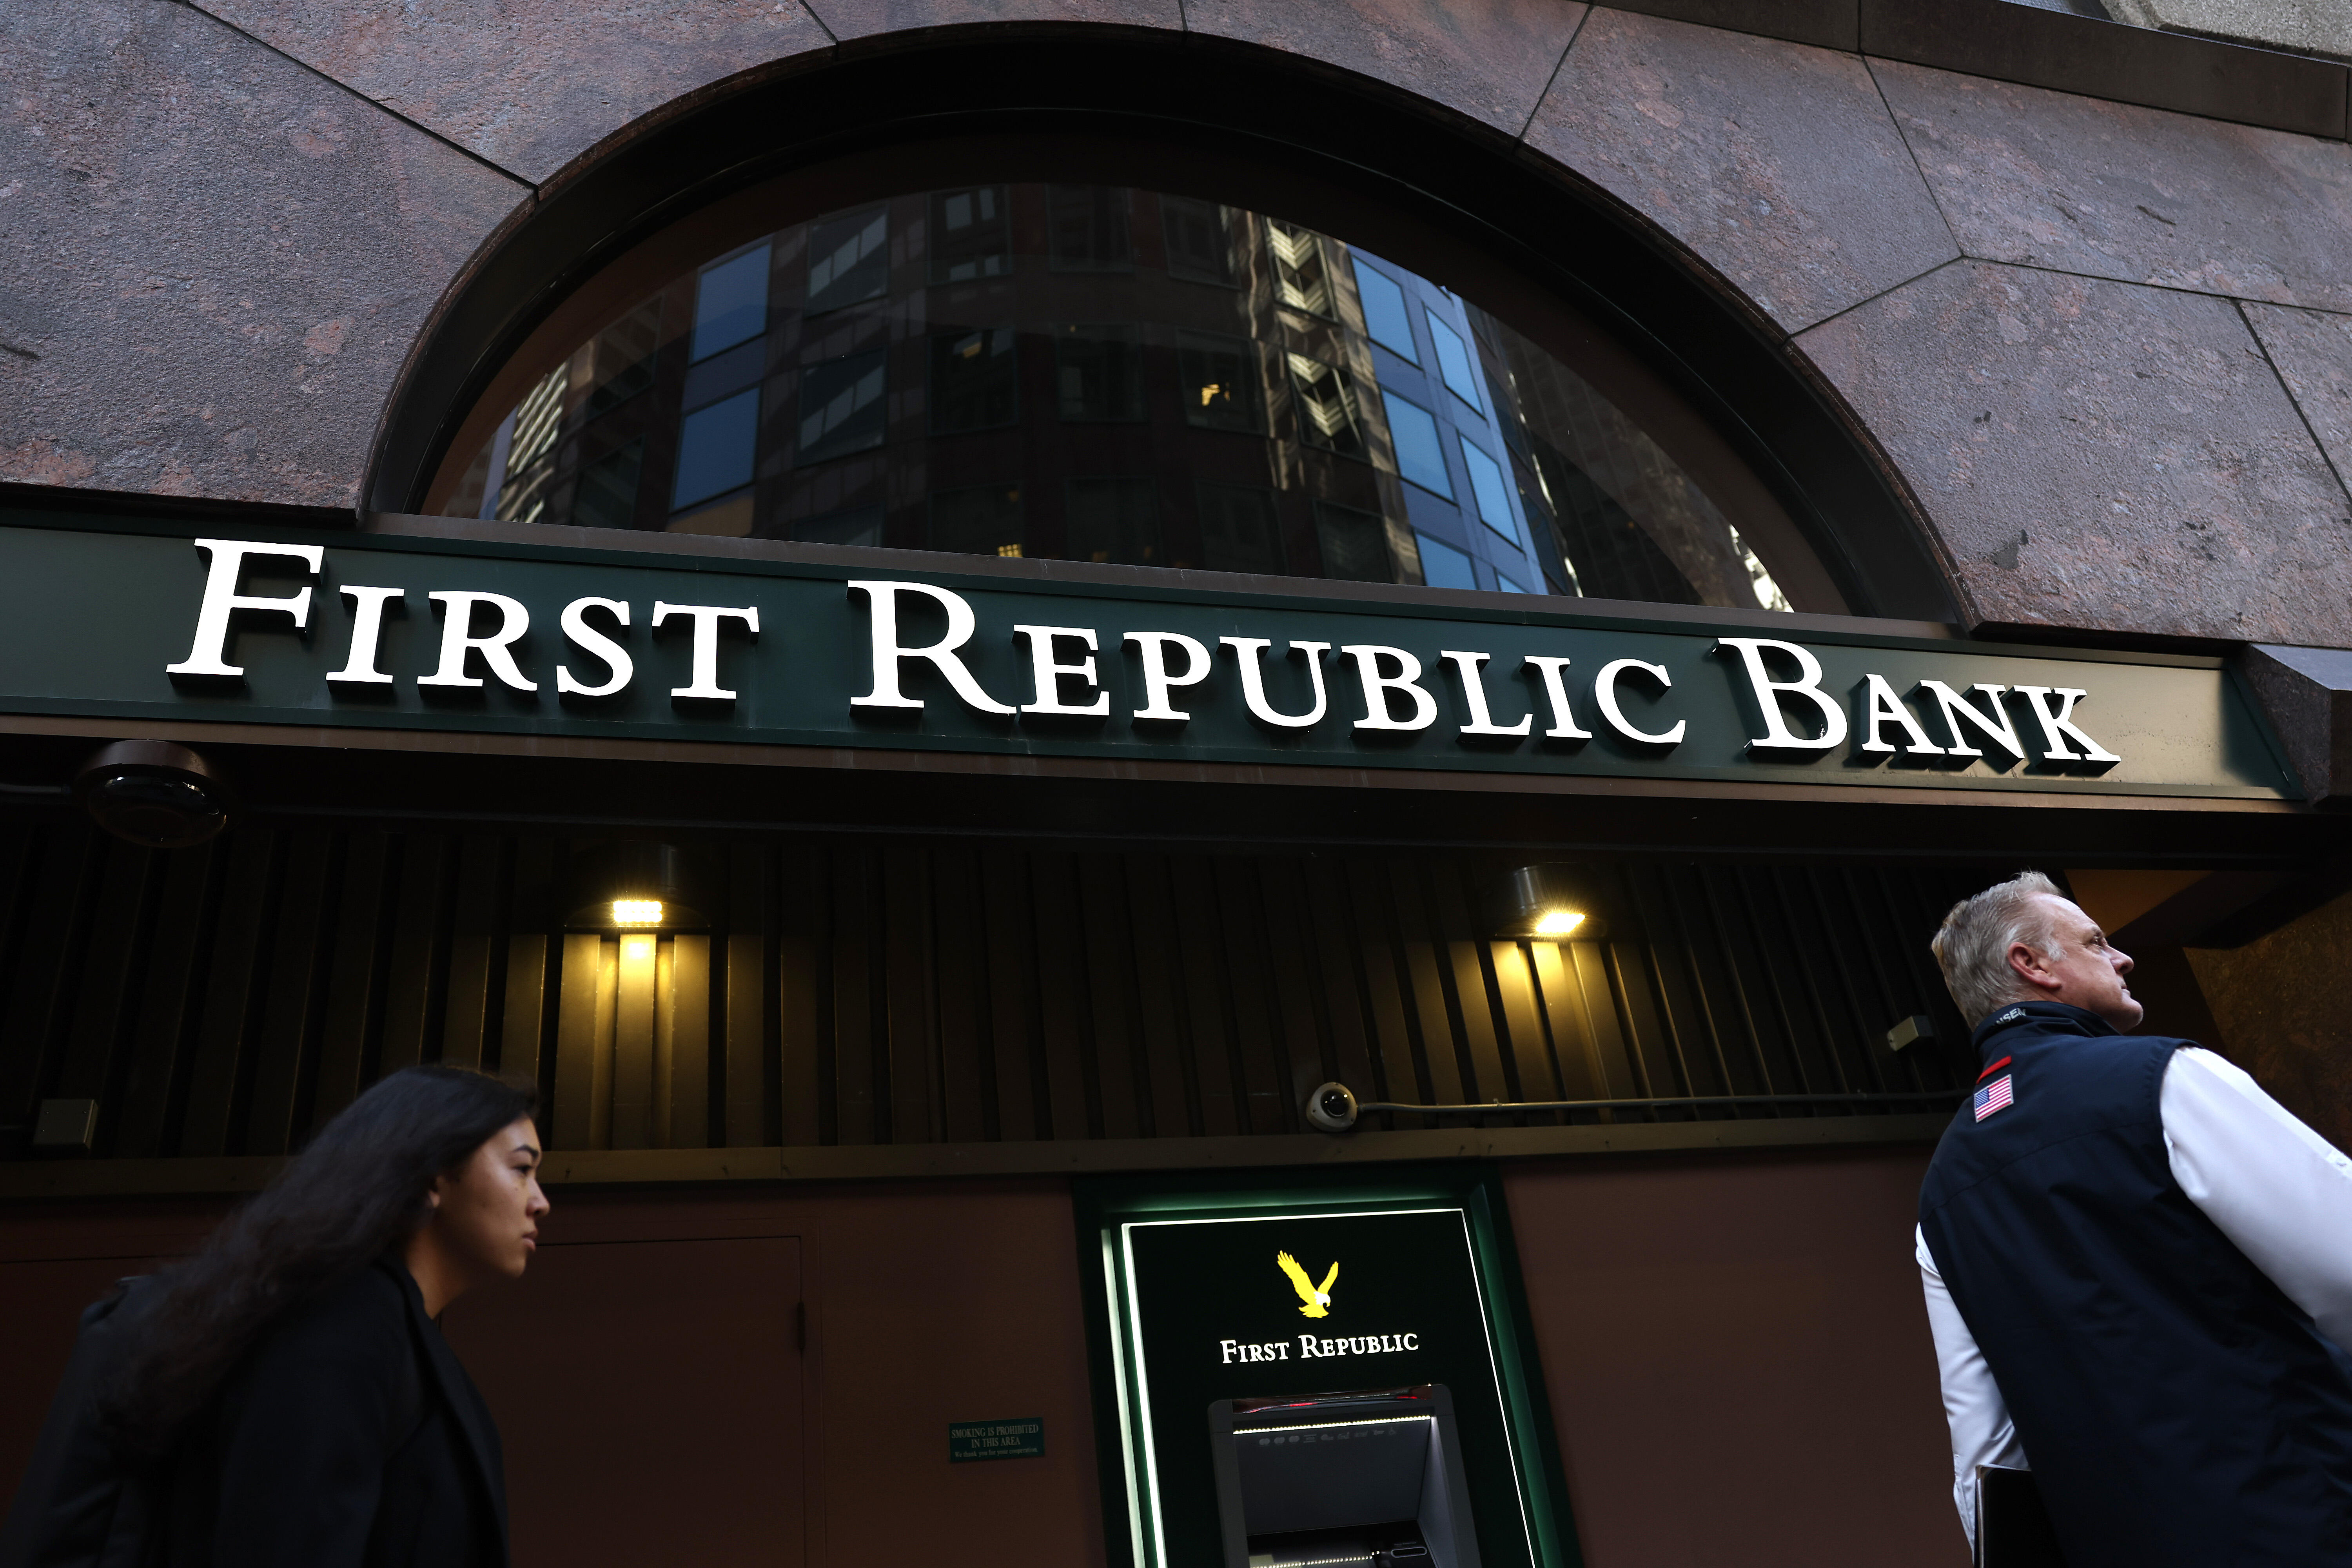 1 first bank. Банк Америки. First Republic Bank. Федеральный резервный банк Нью-Йорка. Коммерческие банки США.